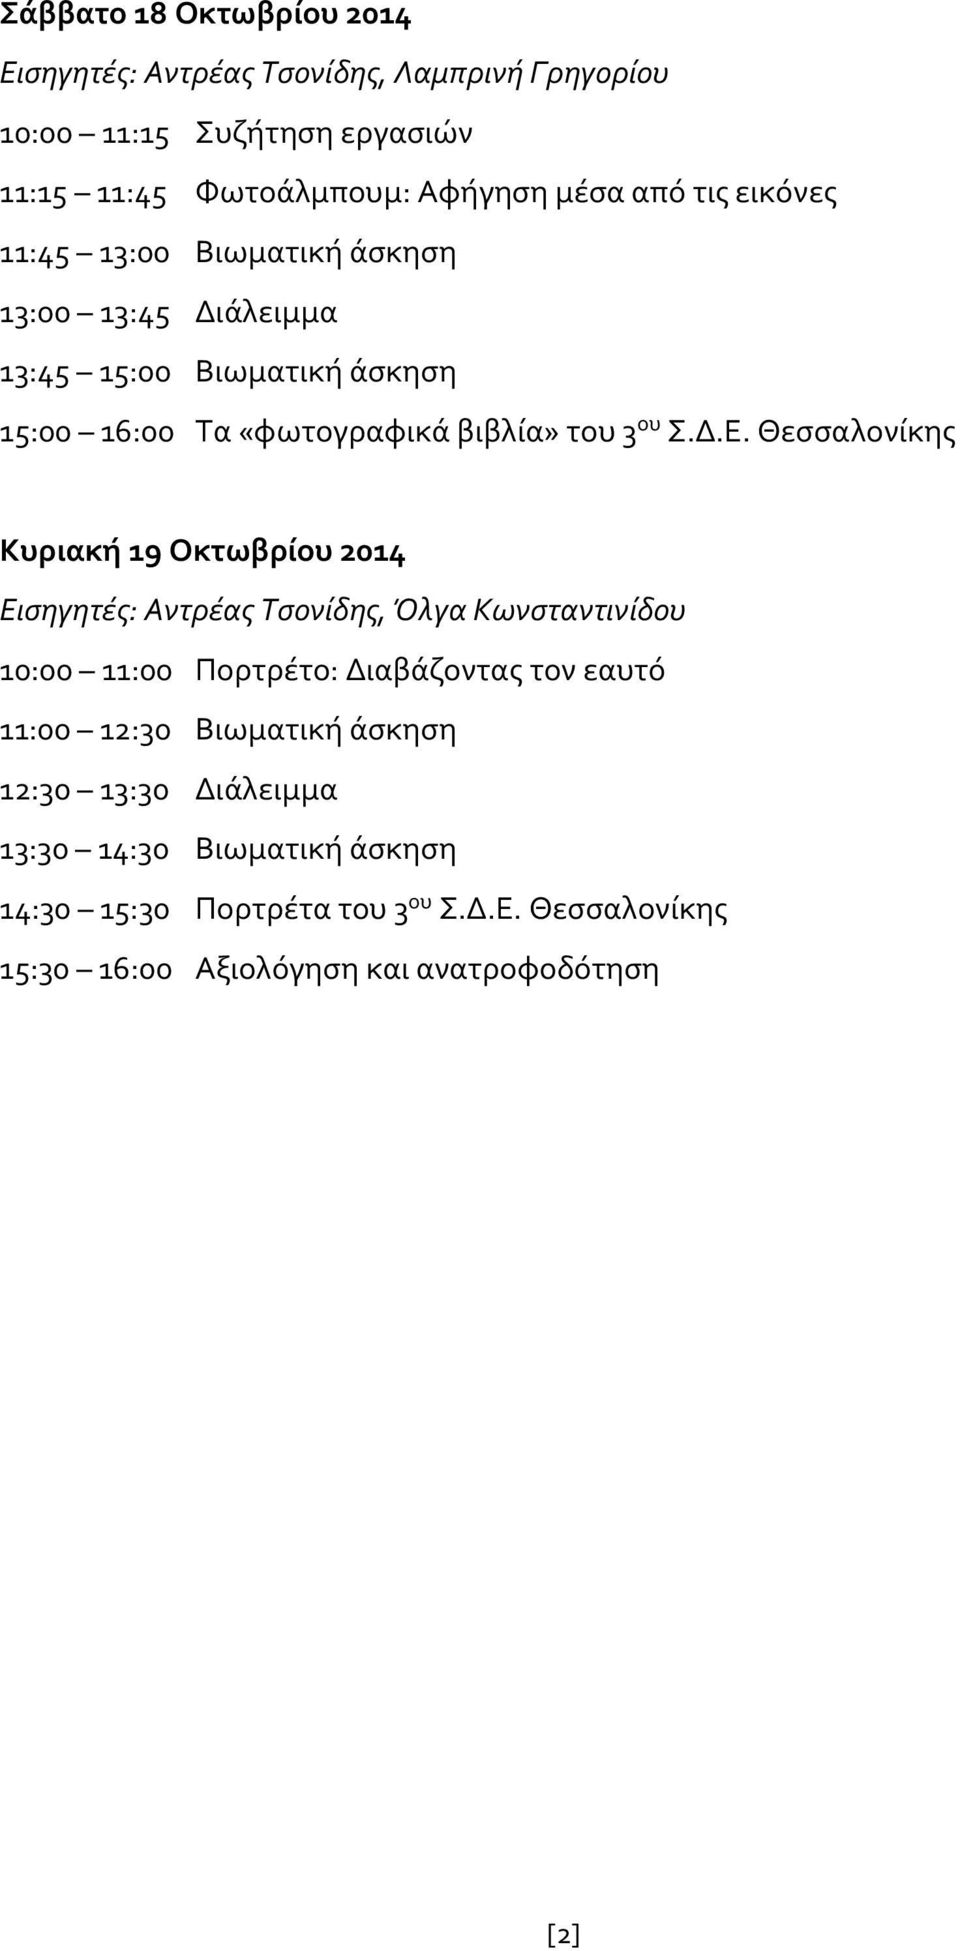 Θεσσαλονίκης Κυριακή 19 Οκτωβρίου 2014 Εισηγητές: Αντρέας Τσονίδης, Όλγα Κωνσταντινίδου 10:00 11:00 Πορτρέτο: Διαβάζοντας τον εαυτό 11:00 12:30